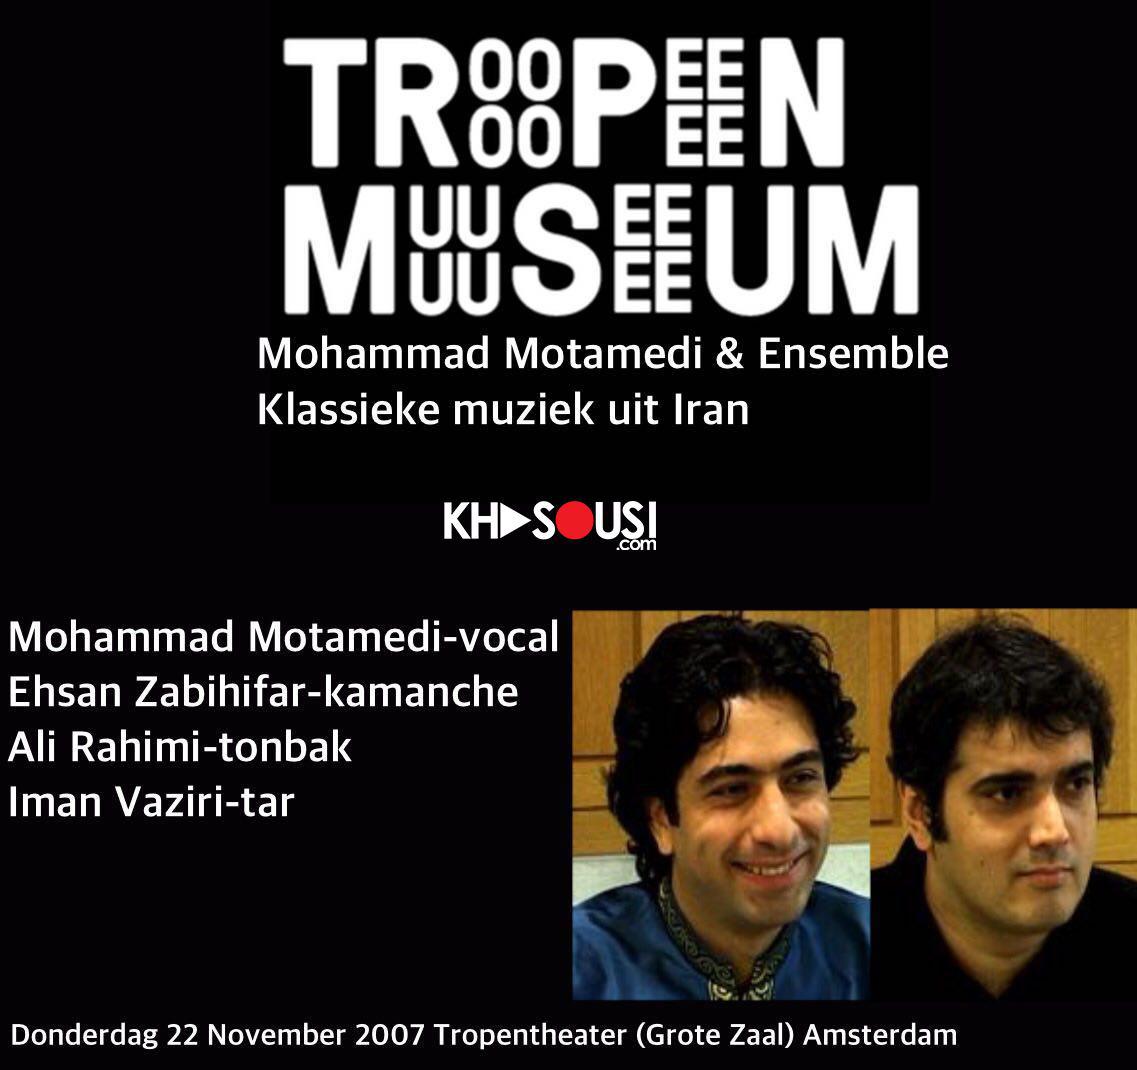 محمد معتمدی و ایمان وزیری - کنسرت آمستردام (2007)